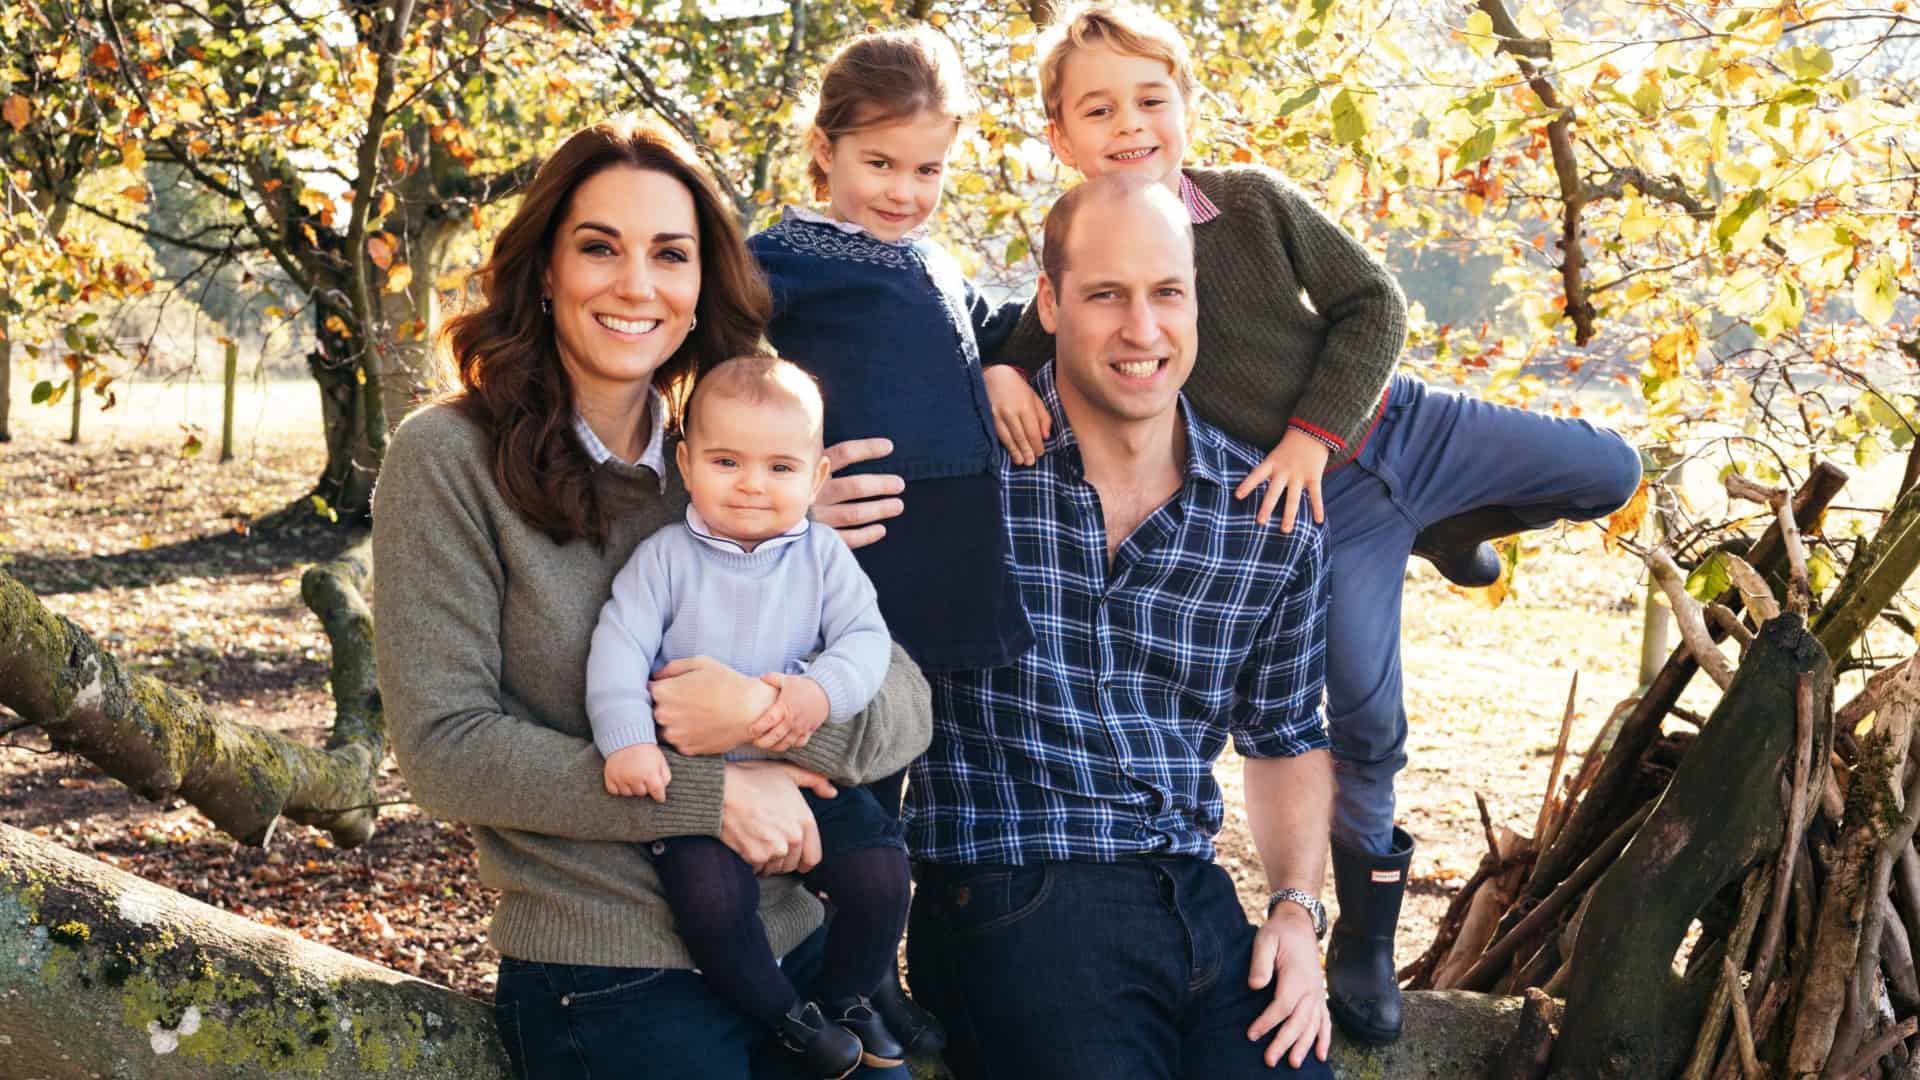 Cách Công nương Kate nuôi dạy những đứa con hoàng gia như thế nào?